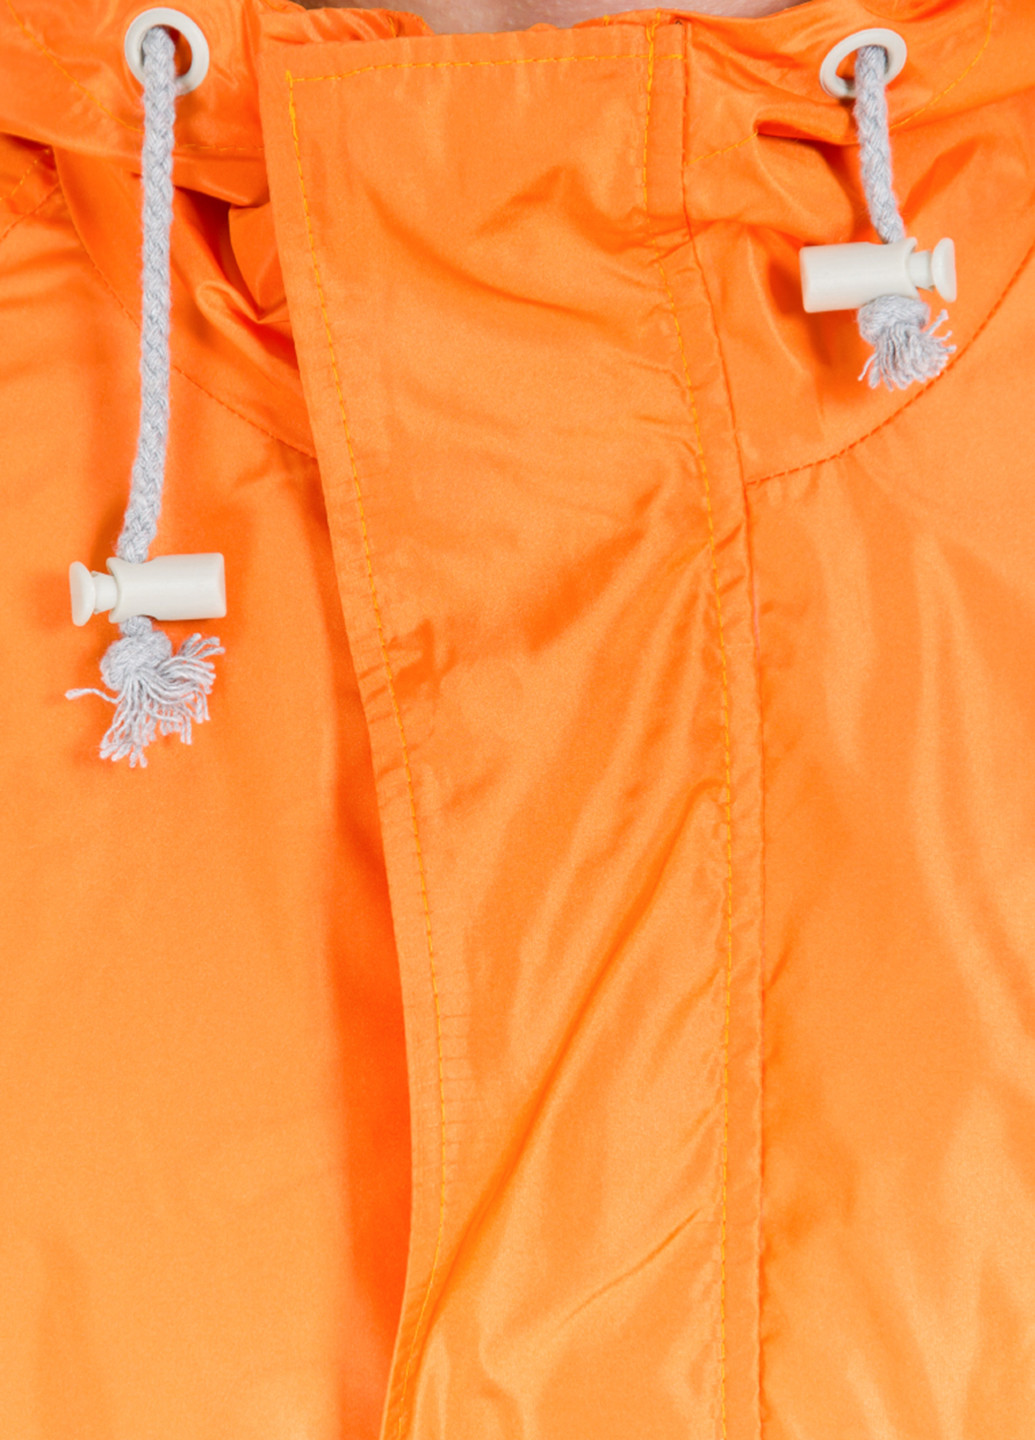 Оранжевая демисезонная куртка F'91